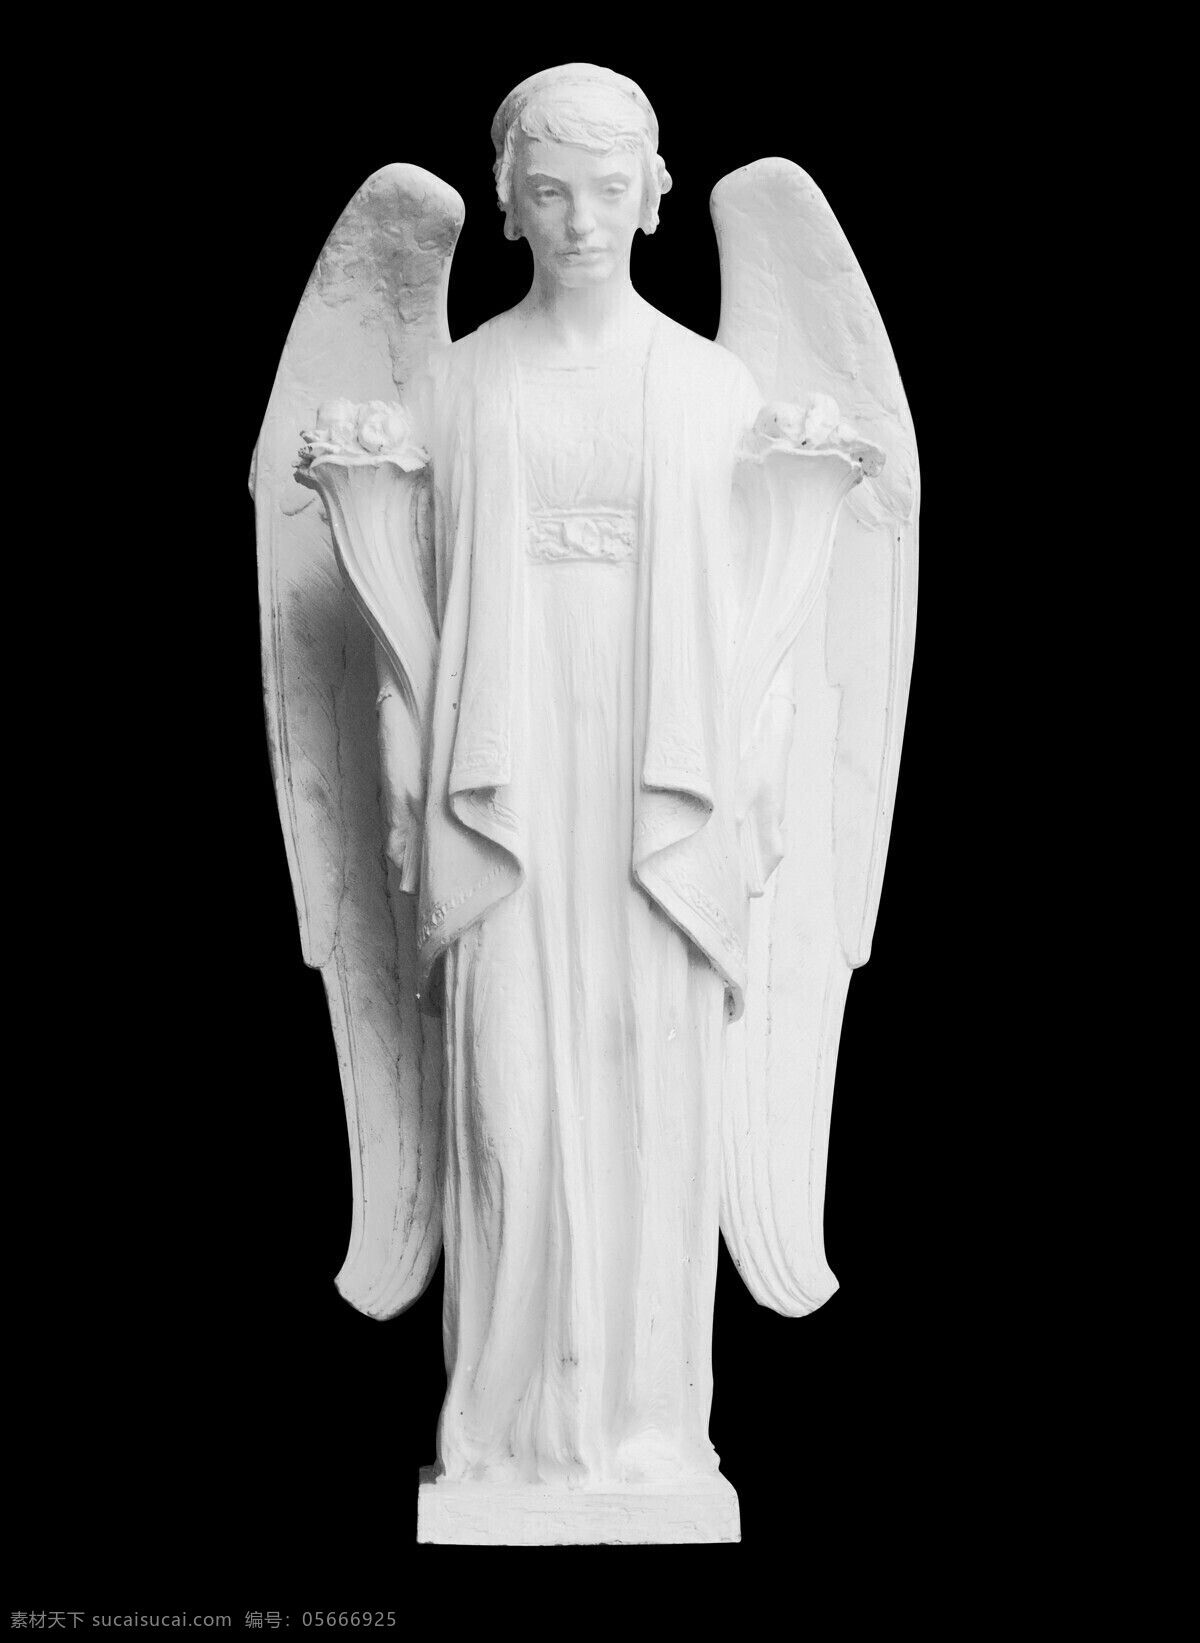 天使 石膏像 天使雕像 天使石膏像 天使翅膀 欧式雕塑 石雕 塑像 雕塑 雕像 石像 神像 女神 雕塑雕像素材 文化艺术